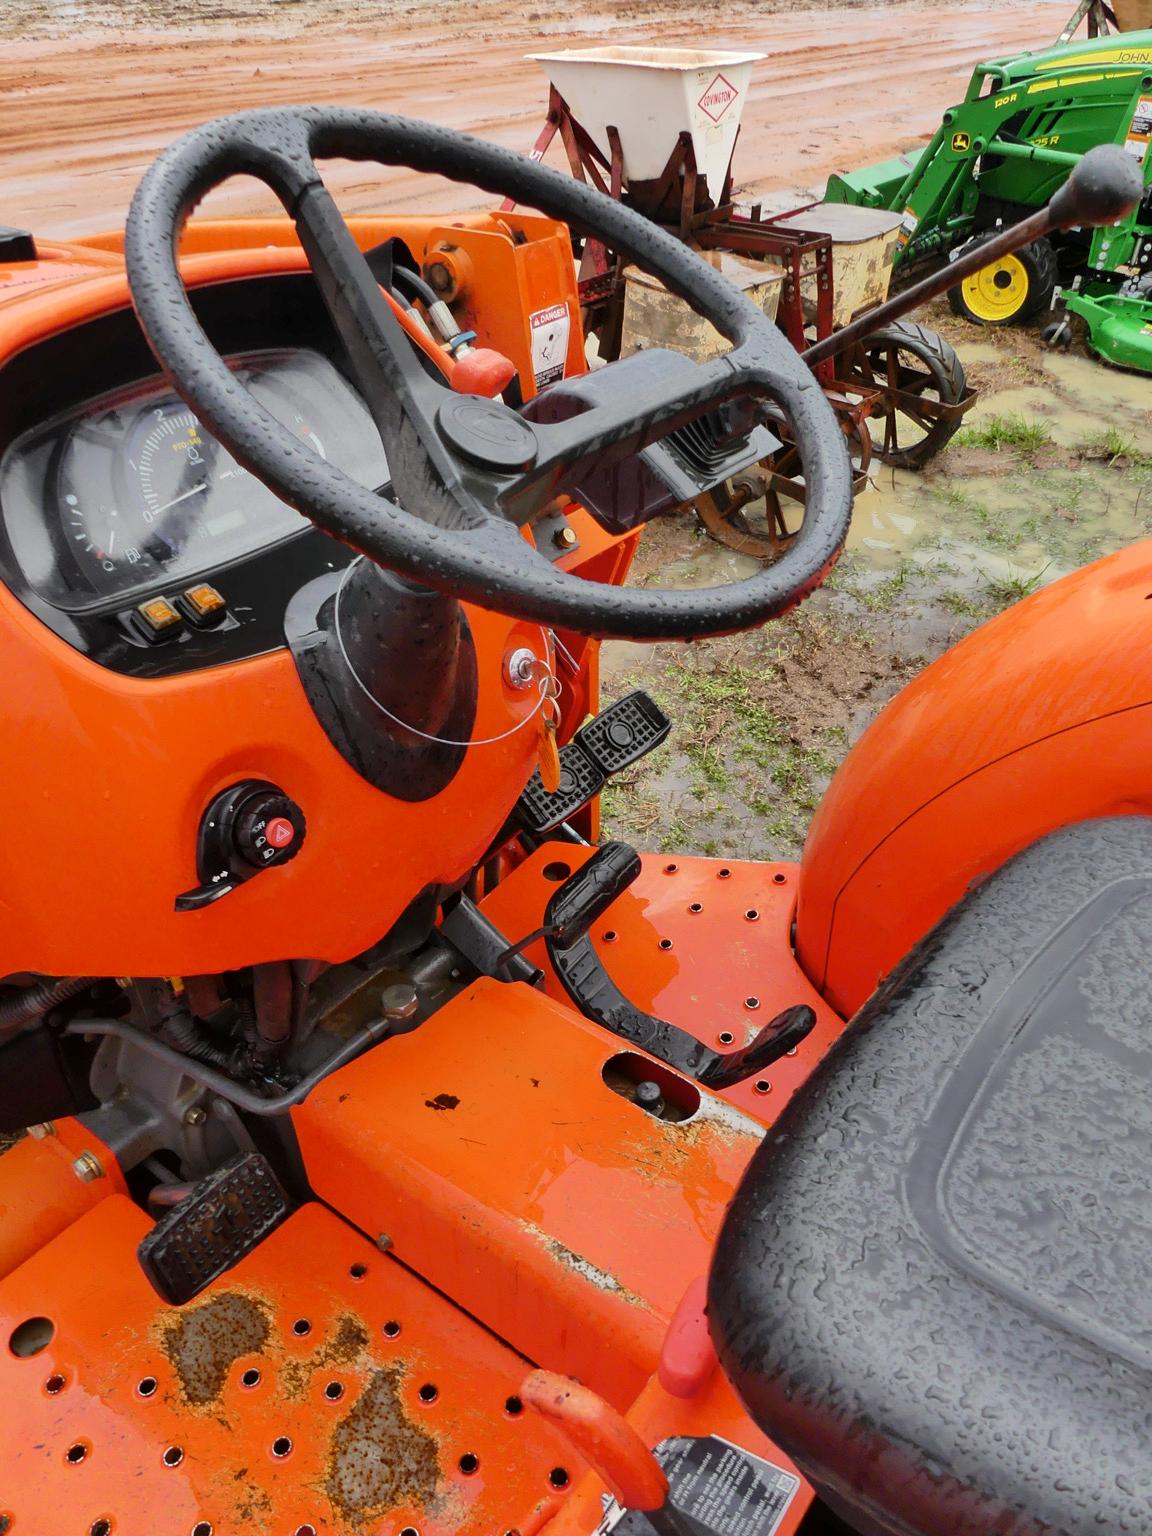 Kubota L3901 Tractor: Front Loader, Backhoe Attachment, Meter Shows 2230 hr